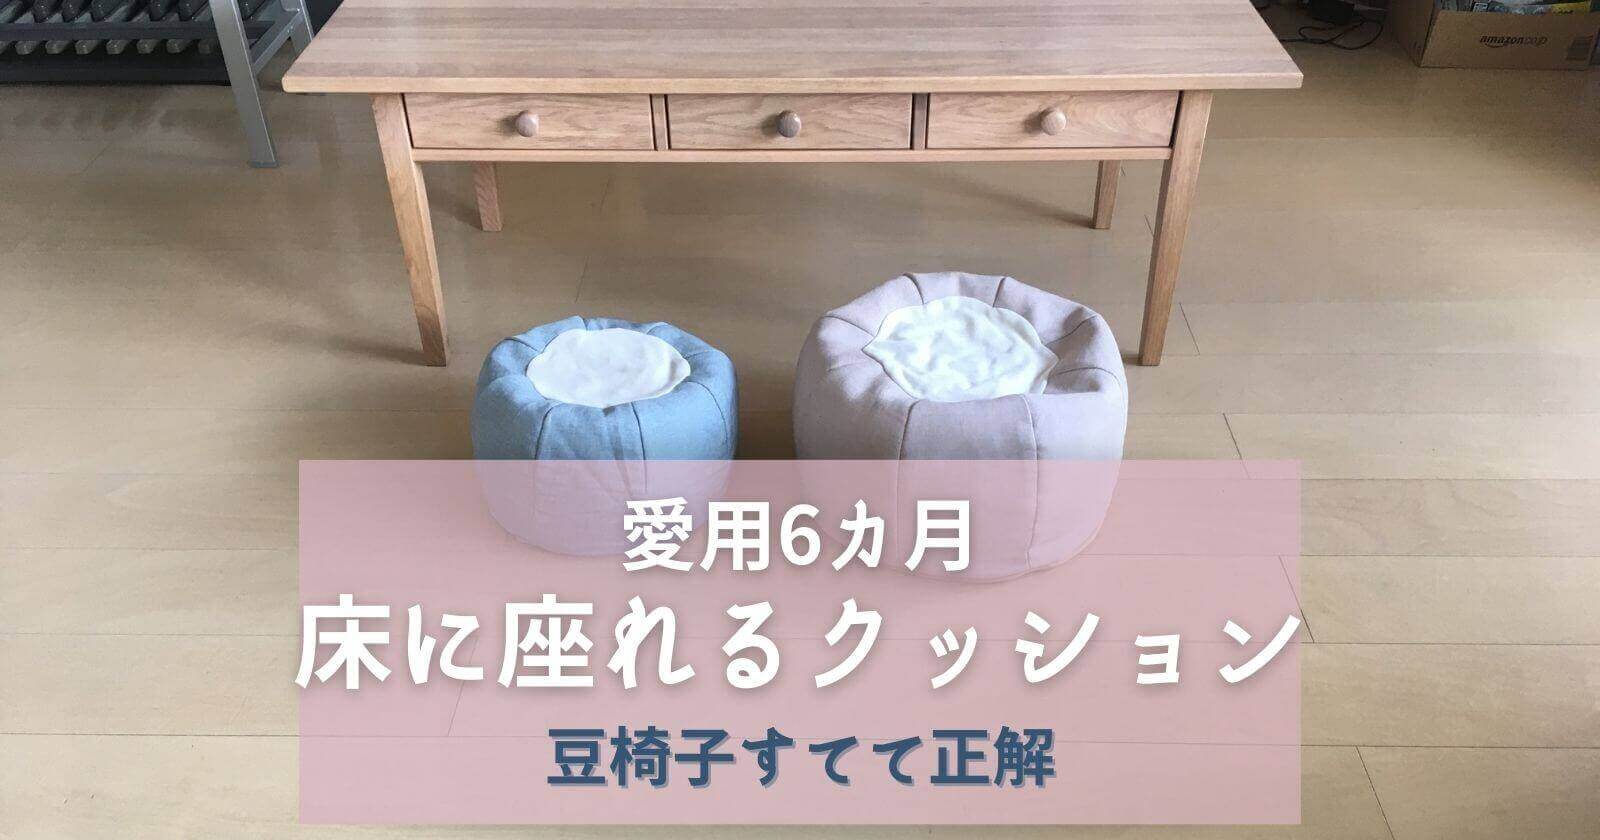 床に座れるクッション】愛用6カ月「子供の豆椅子を床座布団へ」フロアクッション口コミ yunko blog